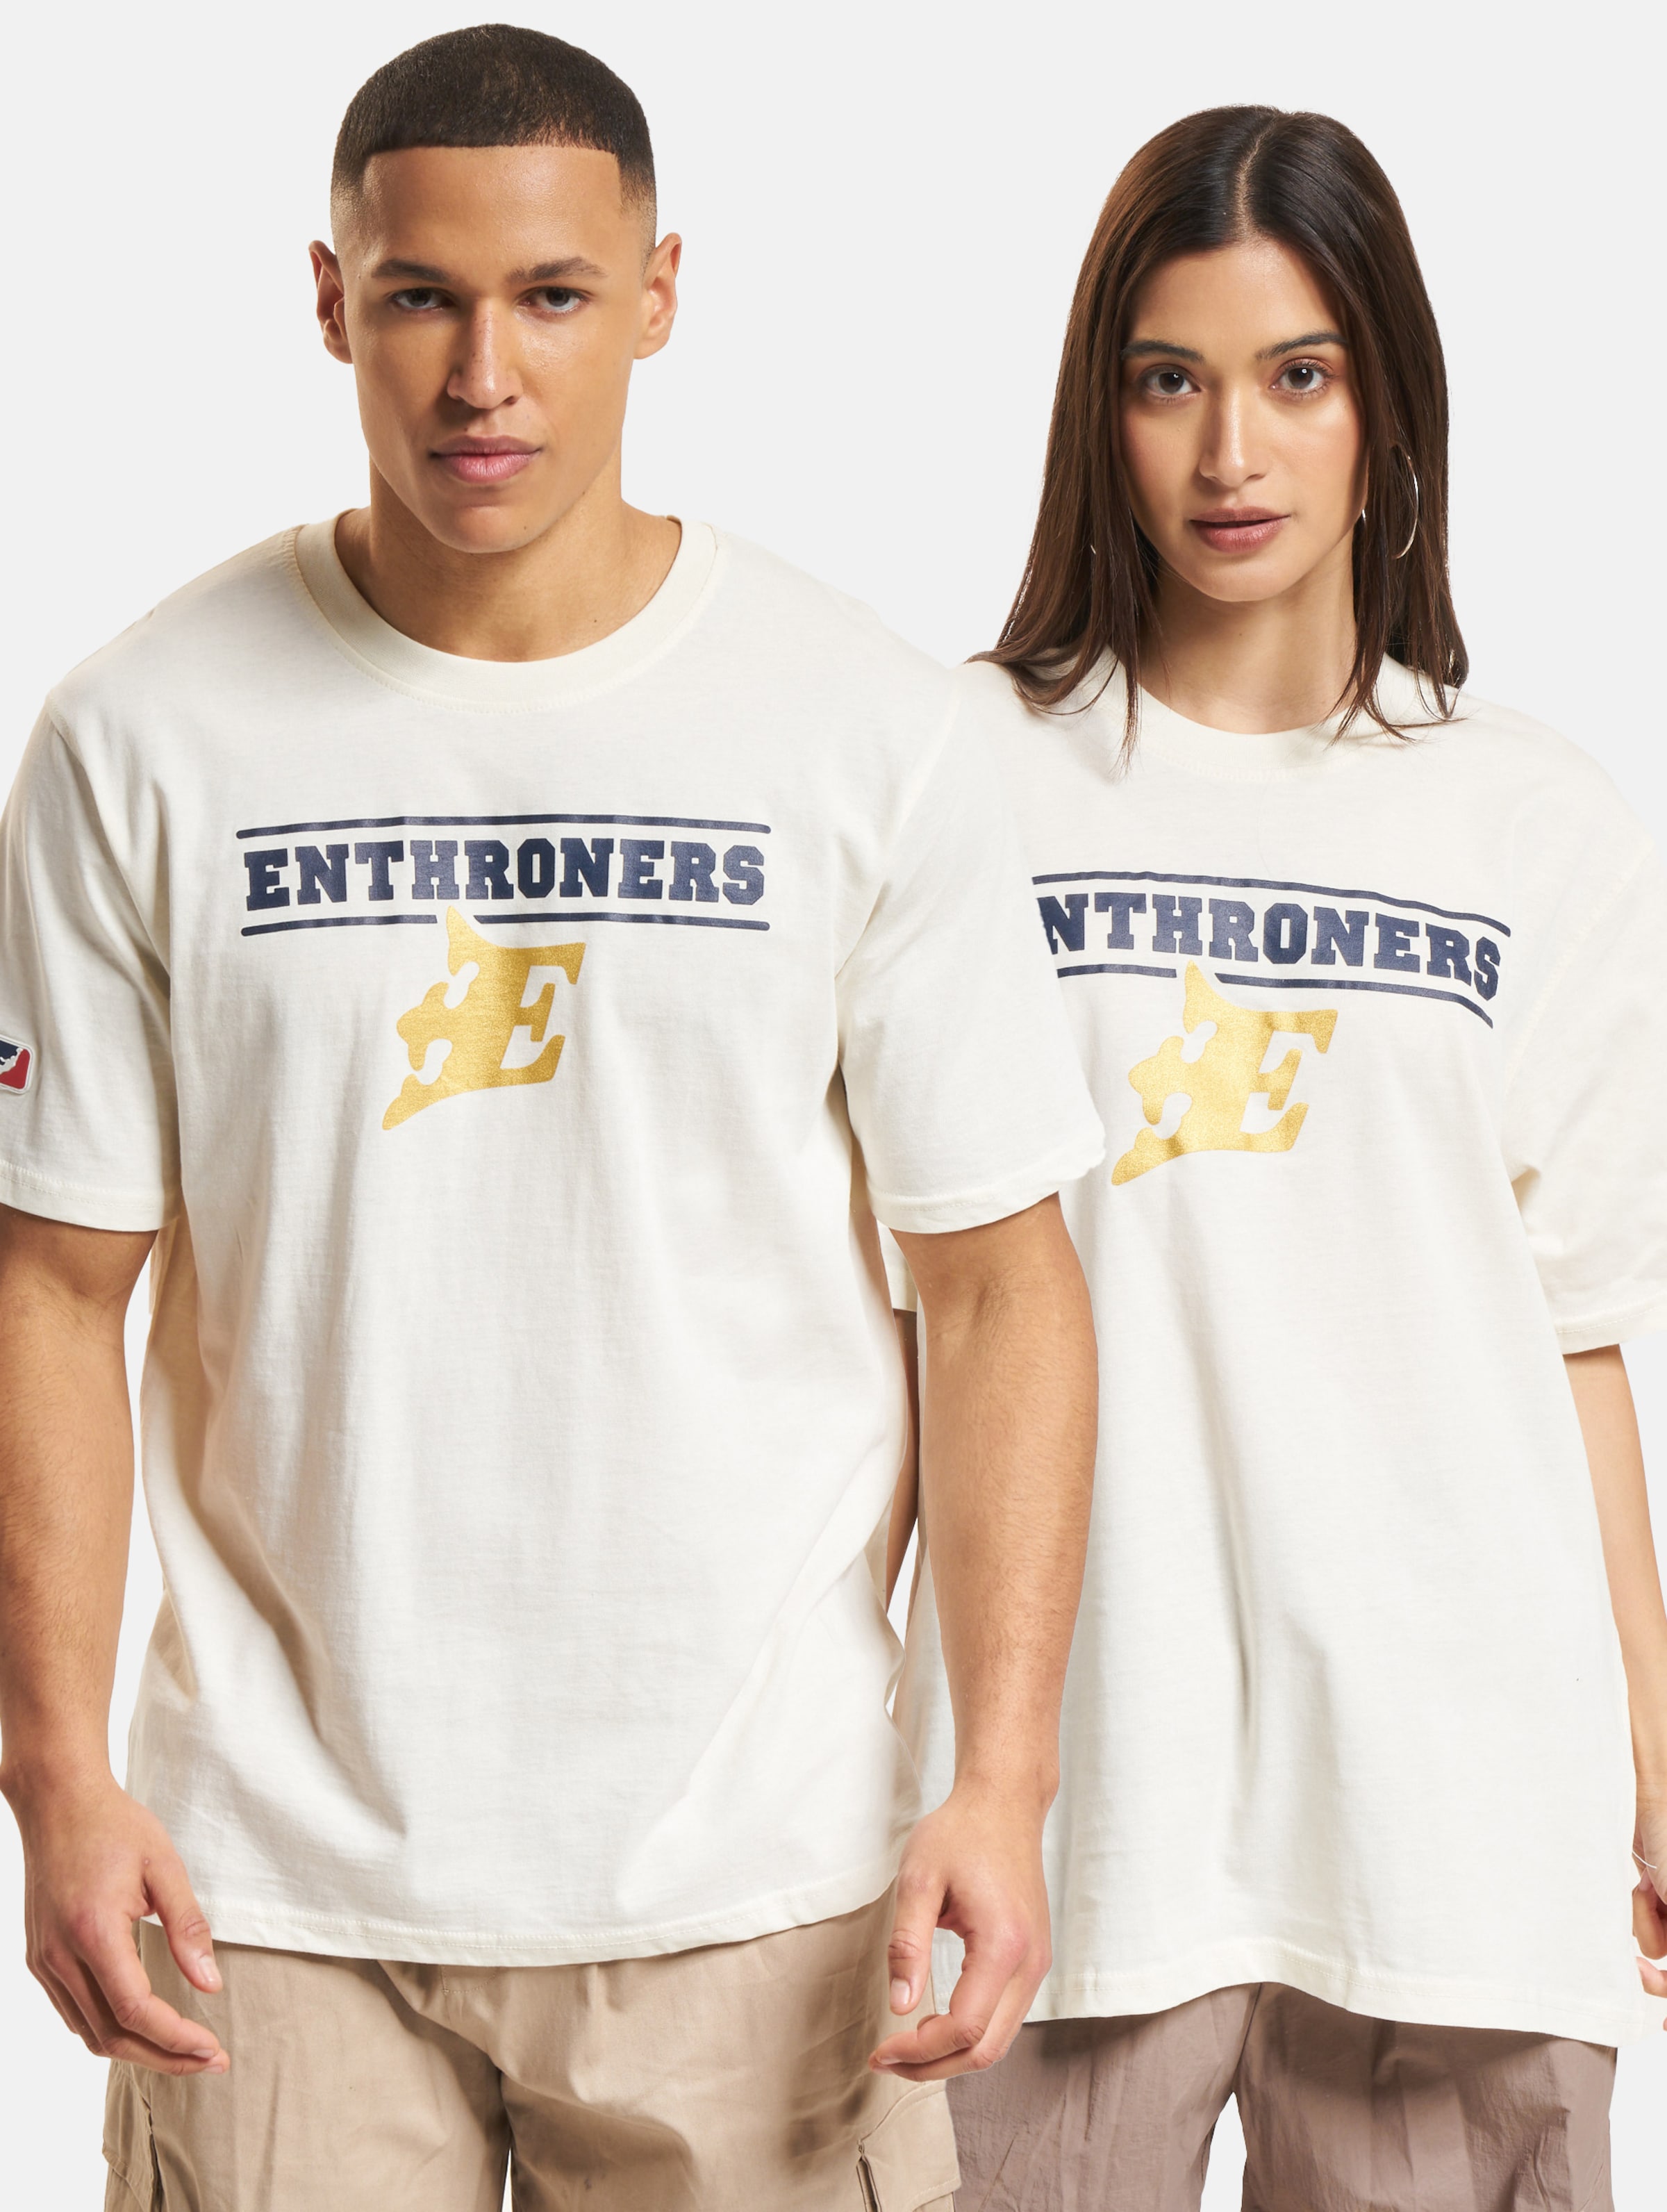 European League Of Football ELF Fehérvár Enthroners 2 T-Shirt Unisex op kleur beige, Maat 3XL